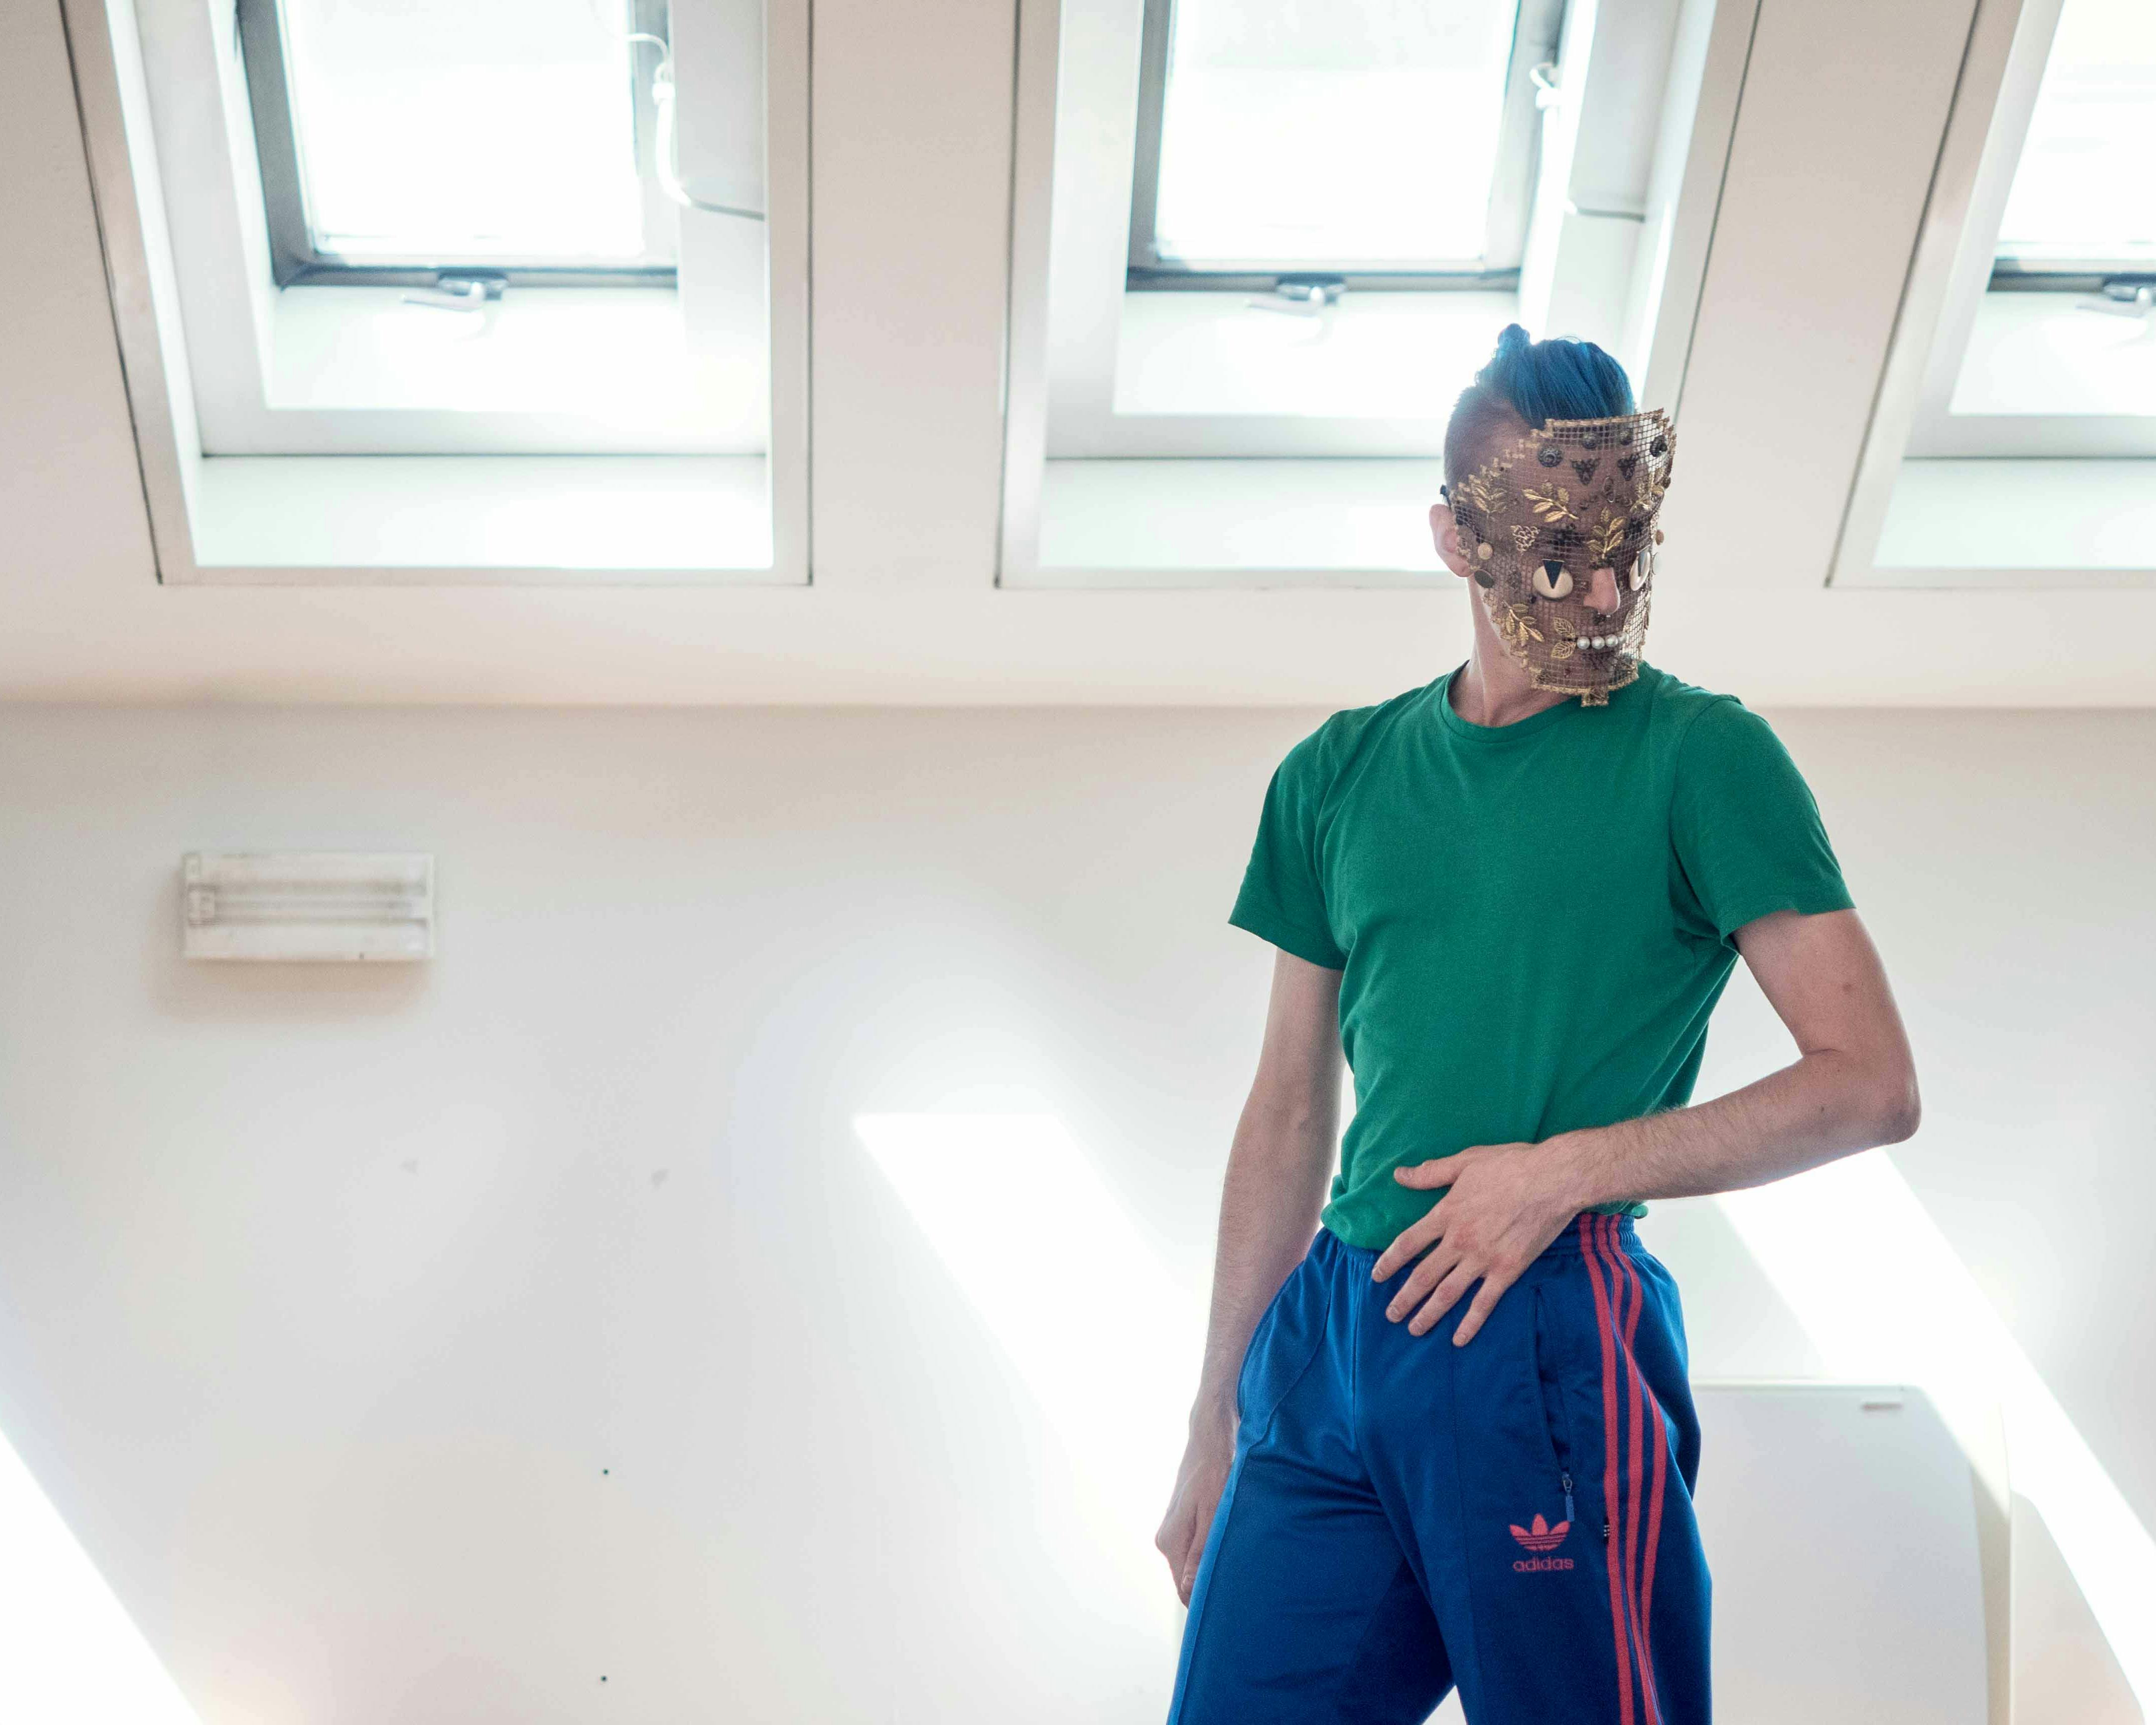 Nicola Galli, in sala, con addosso una delle maschere di "Il mondo altrove". Indossa una maglia verde foreesta e una tuta blù.